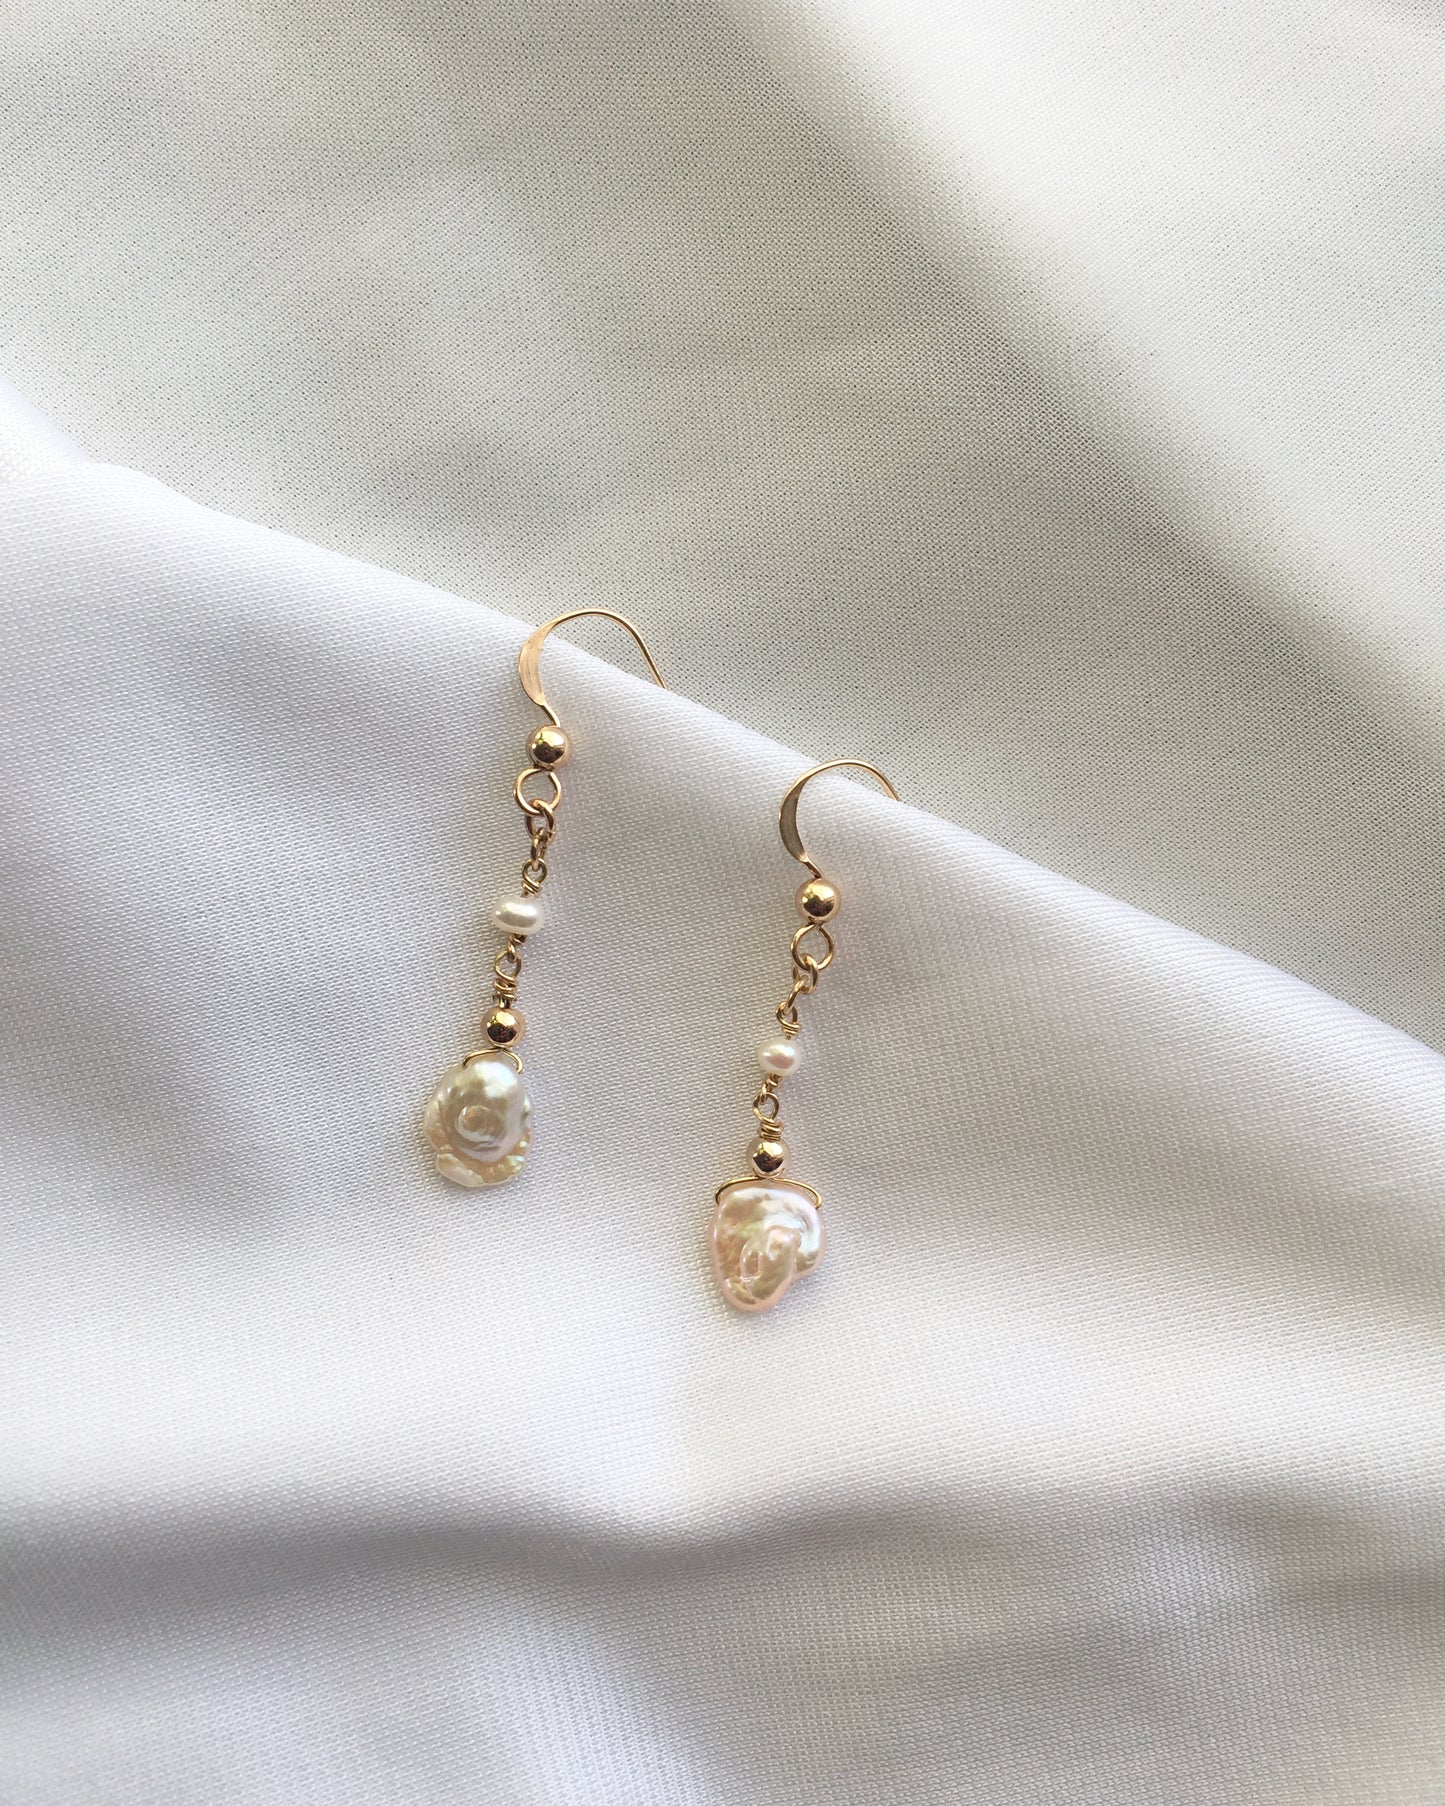 Dainty Pearl Earrings | Delicate Pearl Earrings | Organic Pearl Dangle Earrings in Gold Filled or Sterling Silver | IB Jewelry